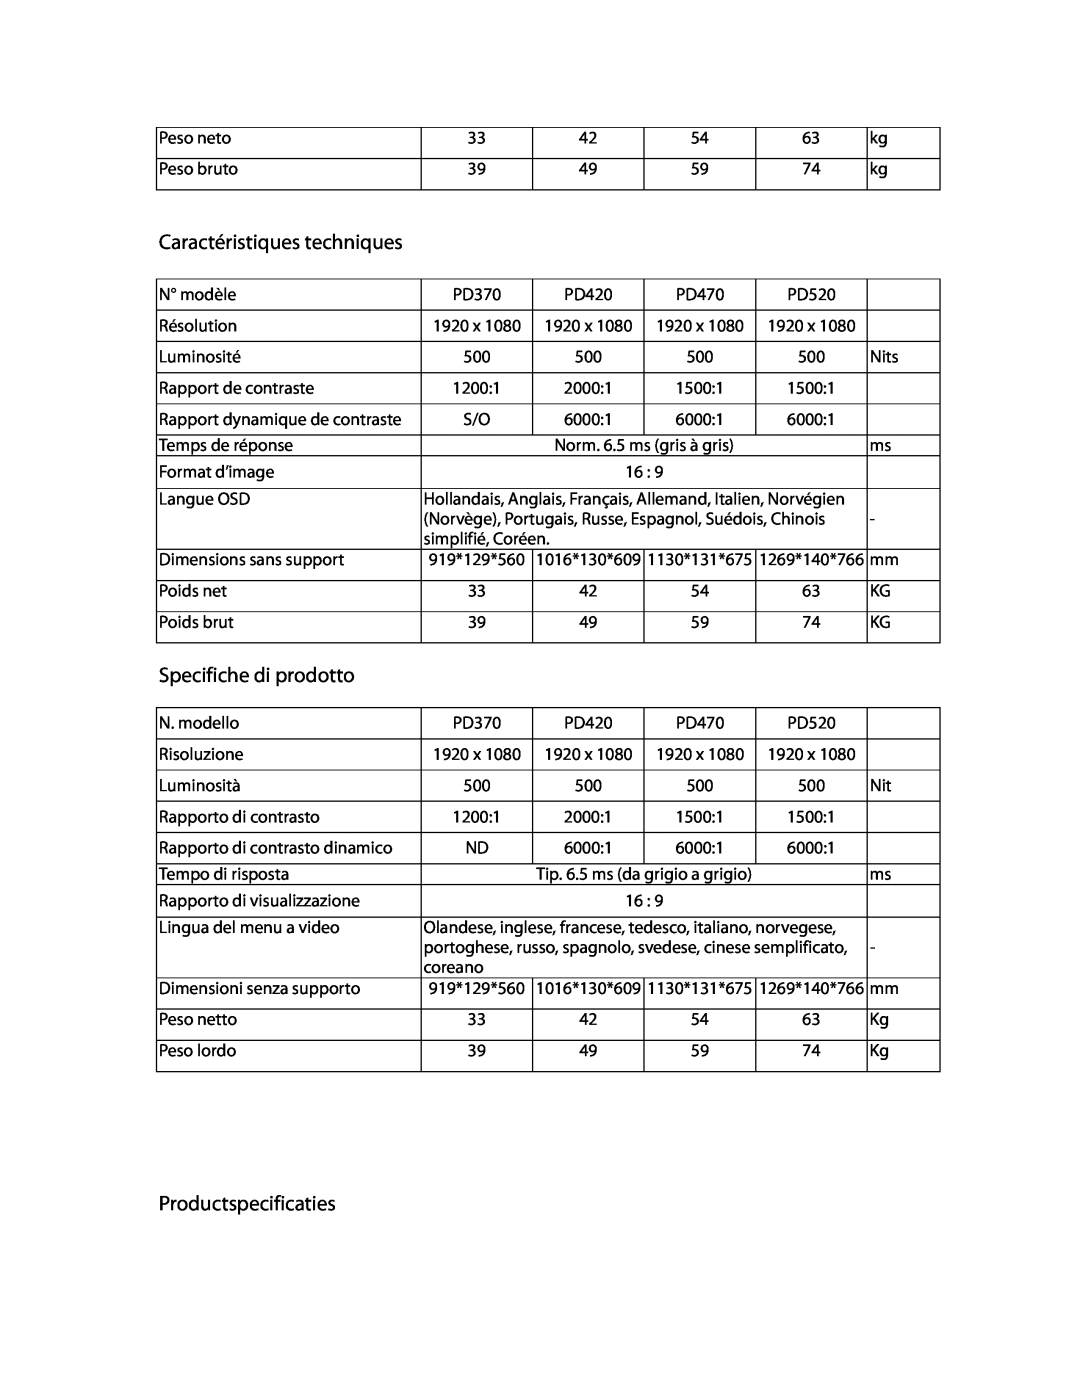 Planar PD370 manual Caractéristiques techniques, Specifiche di prodotto, Productspecificaties 